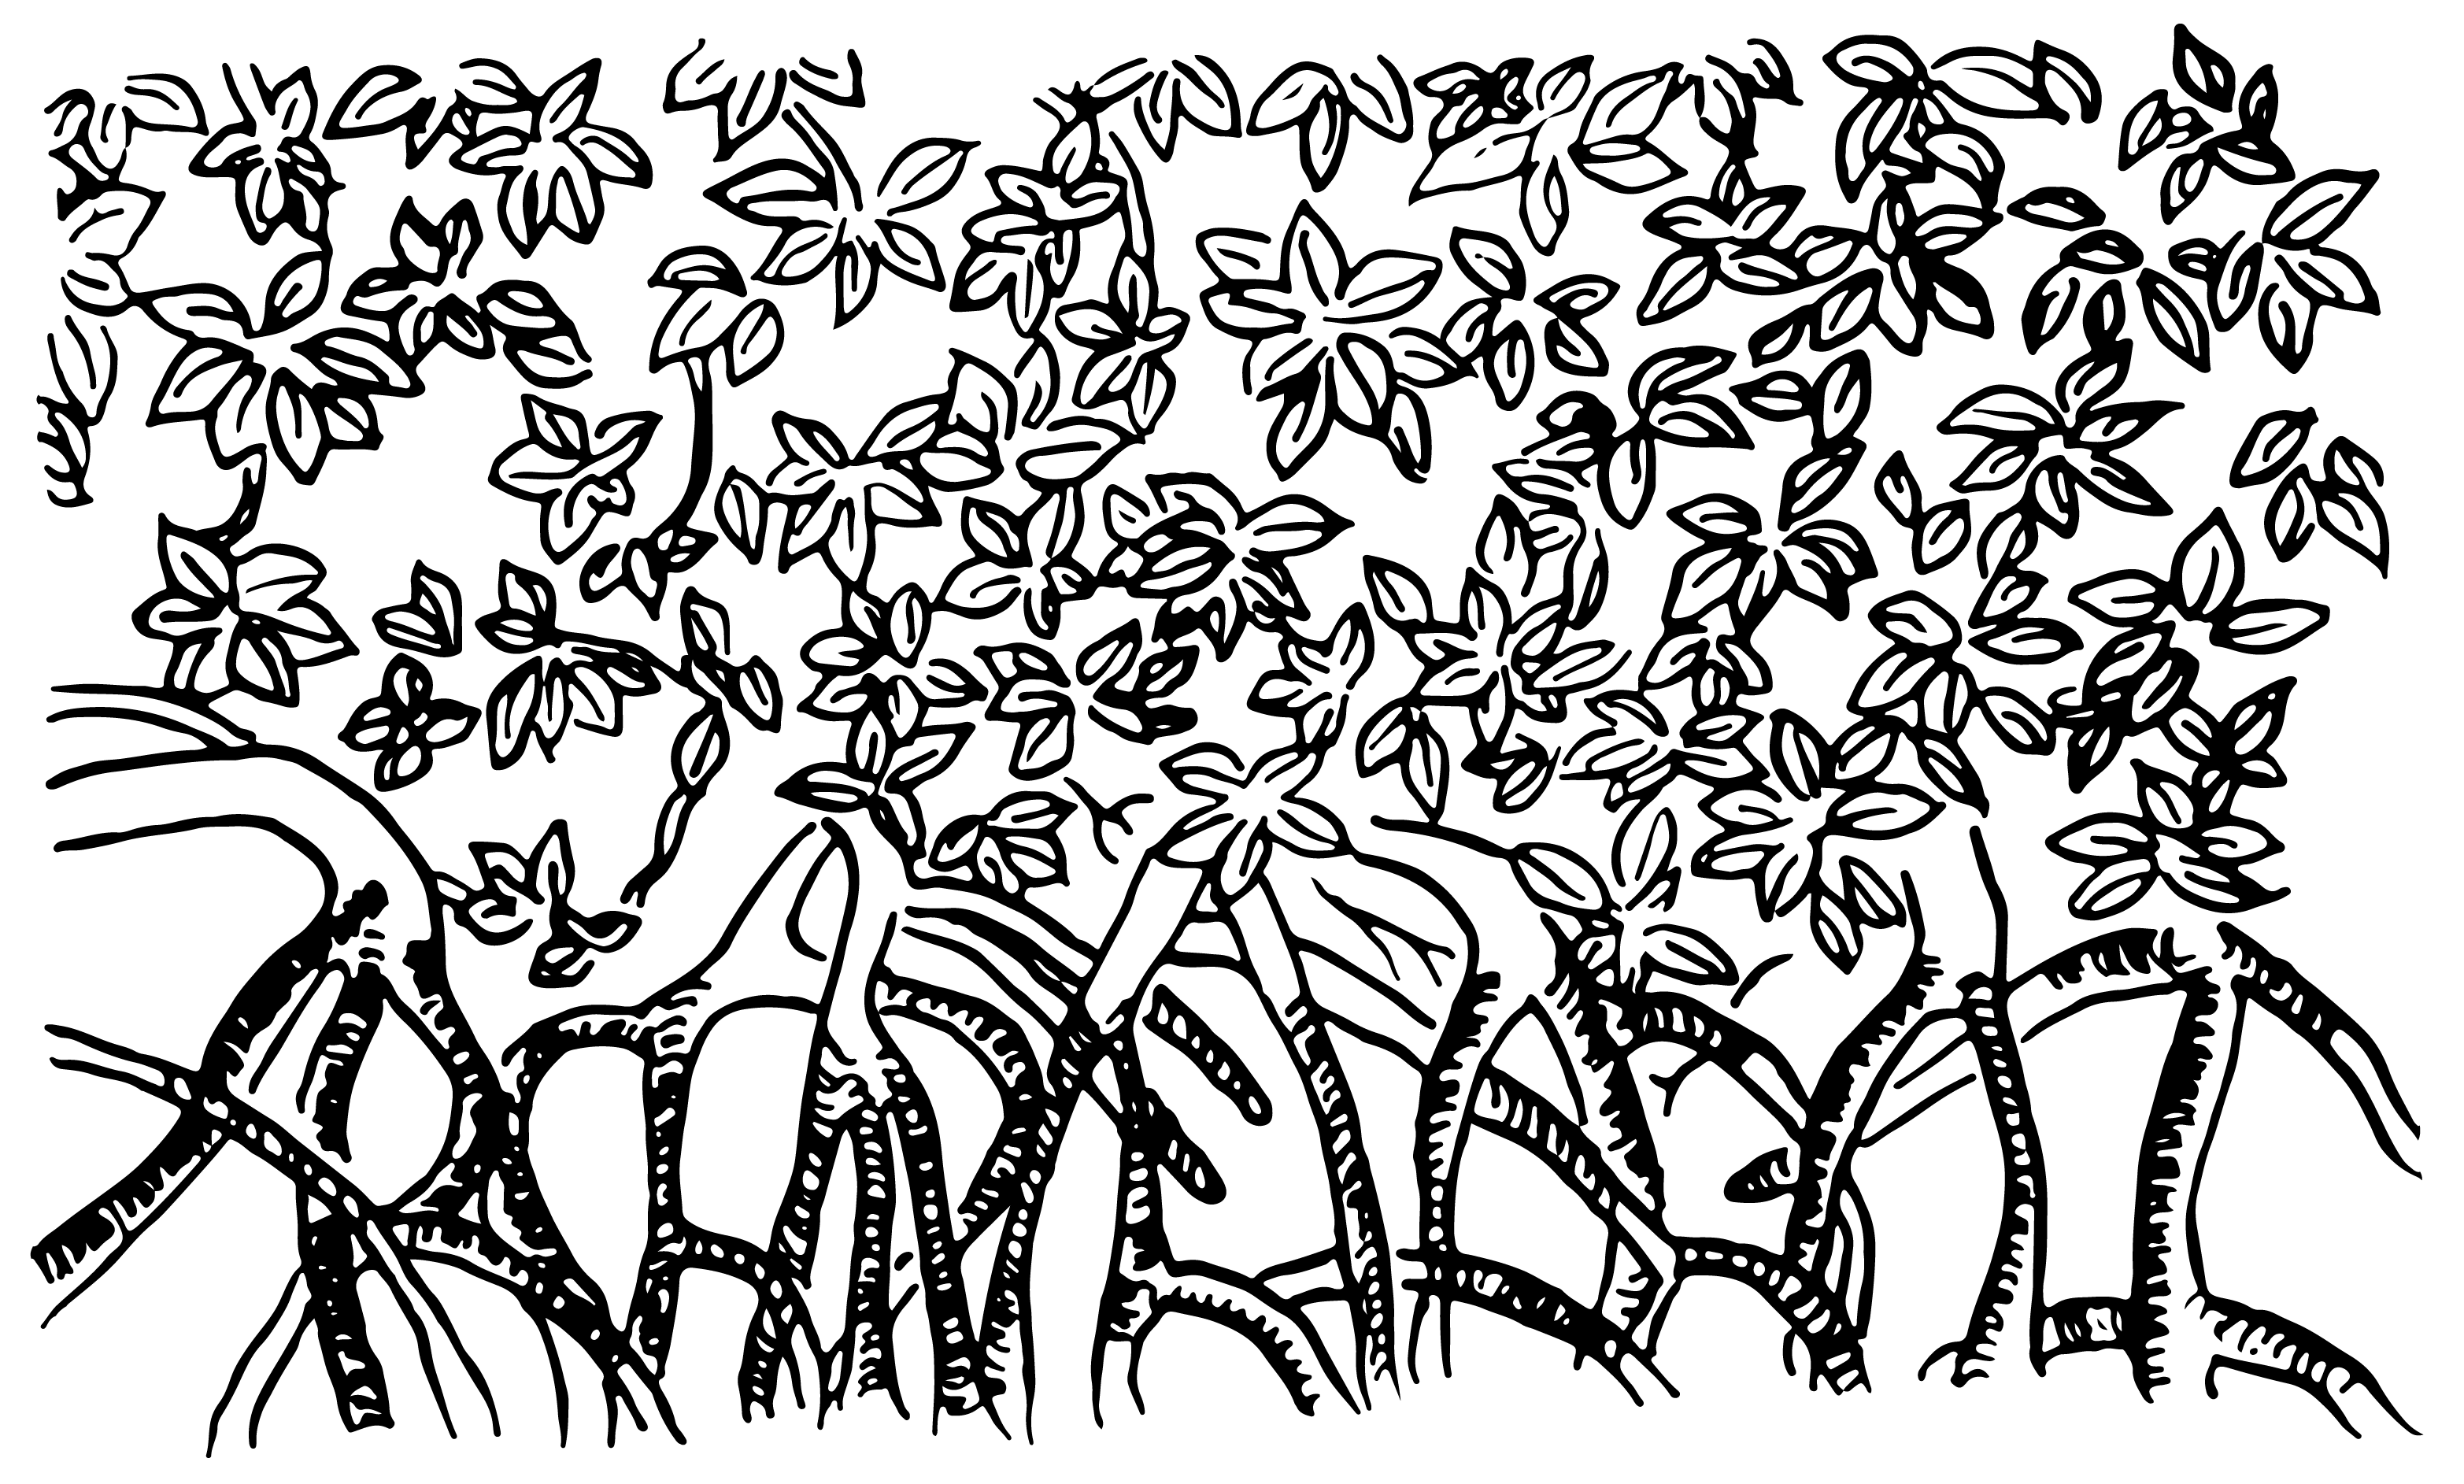 Archipiélago Uno. Ilustración de un mangle dibujado con líneas. Hojas arriba y raíces abajo. Las raíces van formando la palabra Archipiélago I